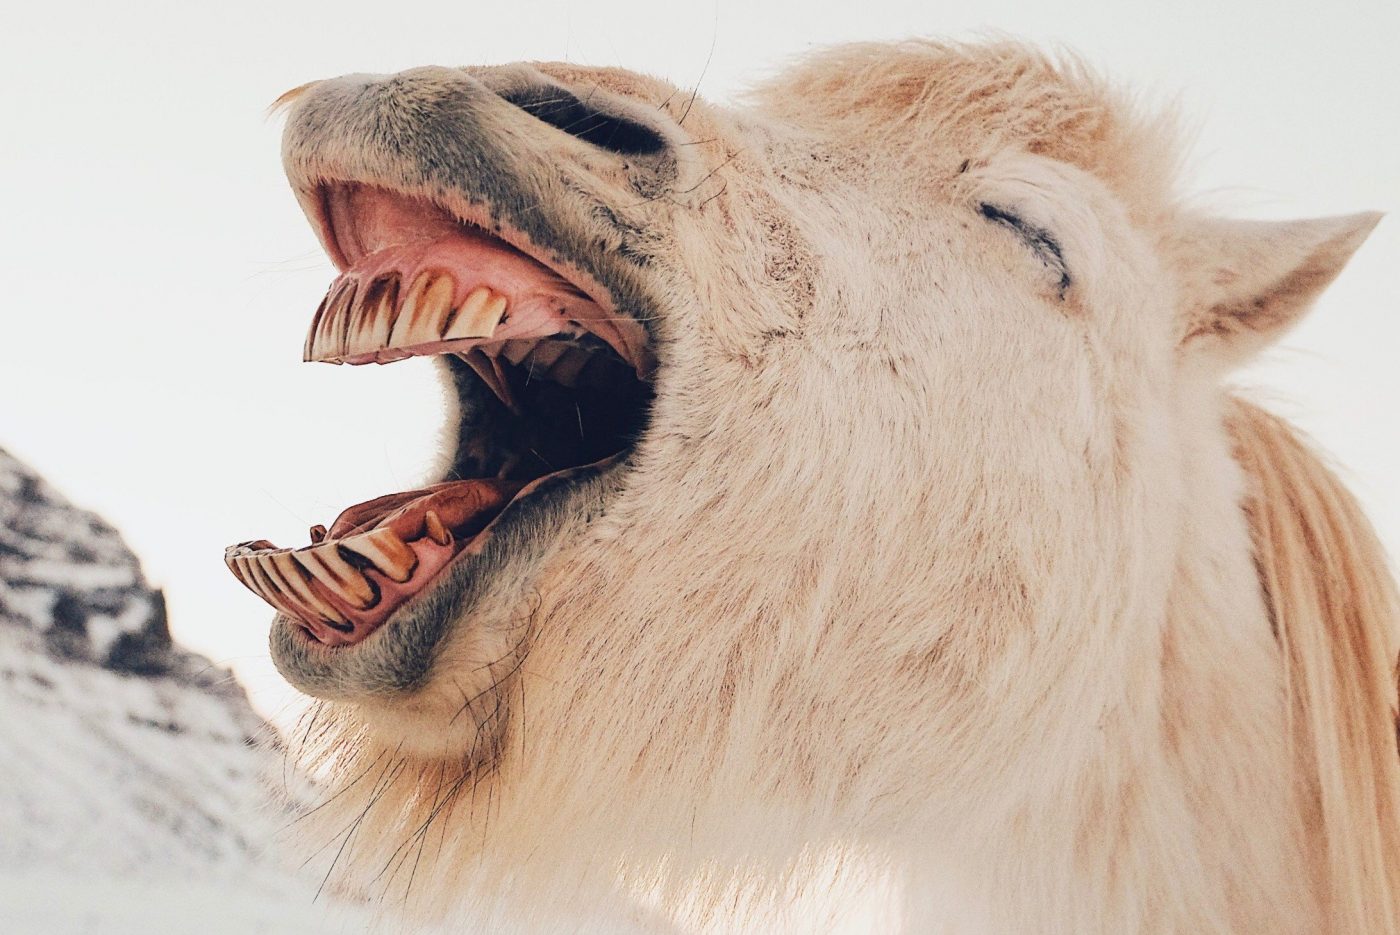 Horse teeth vs human teeth - Meliors Simms